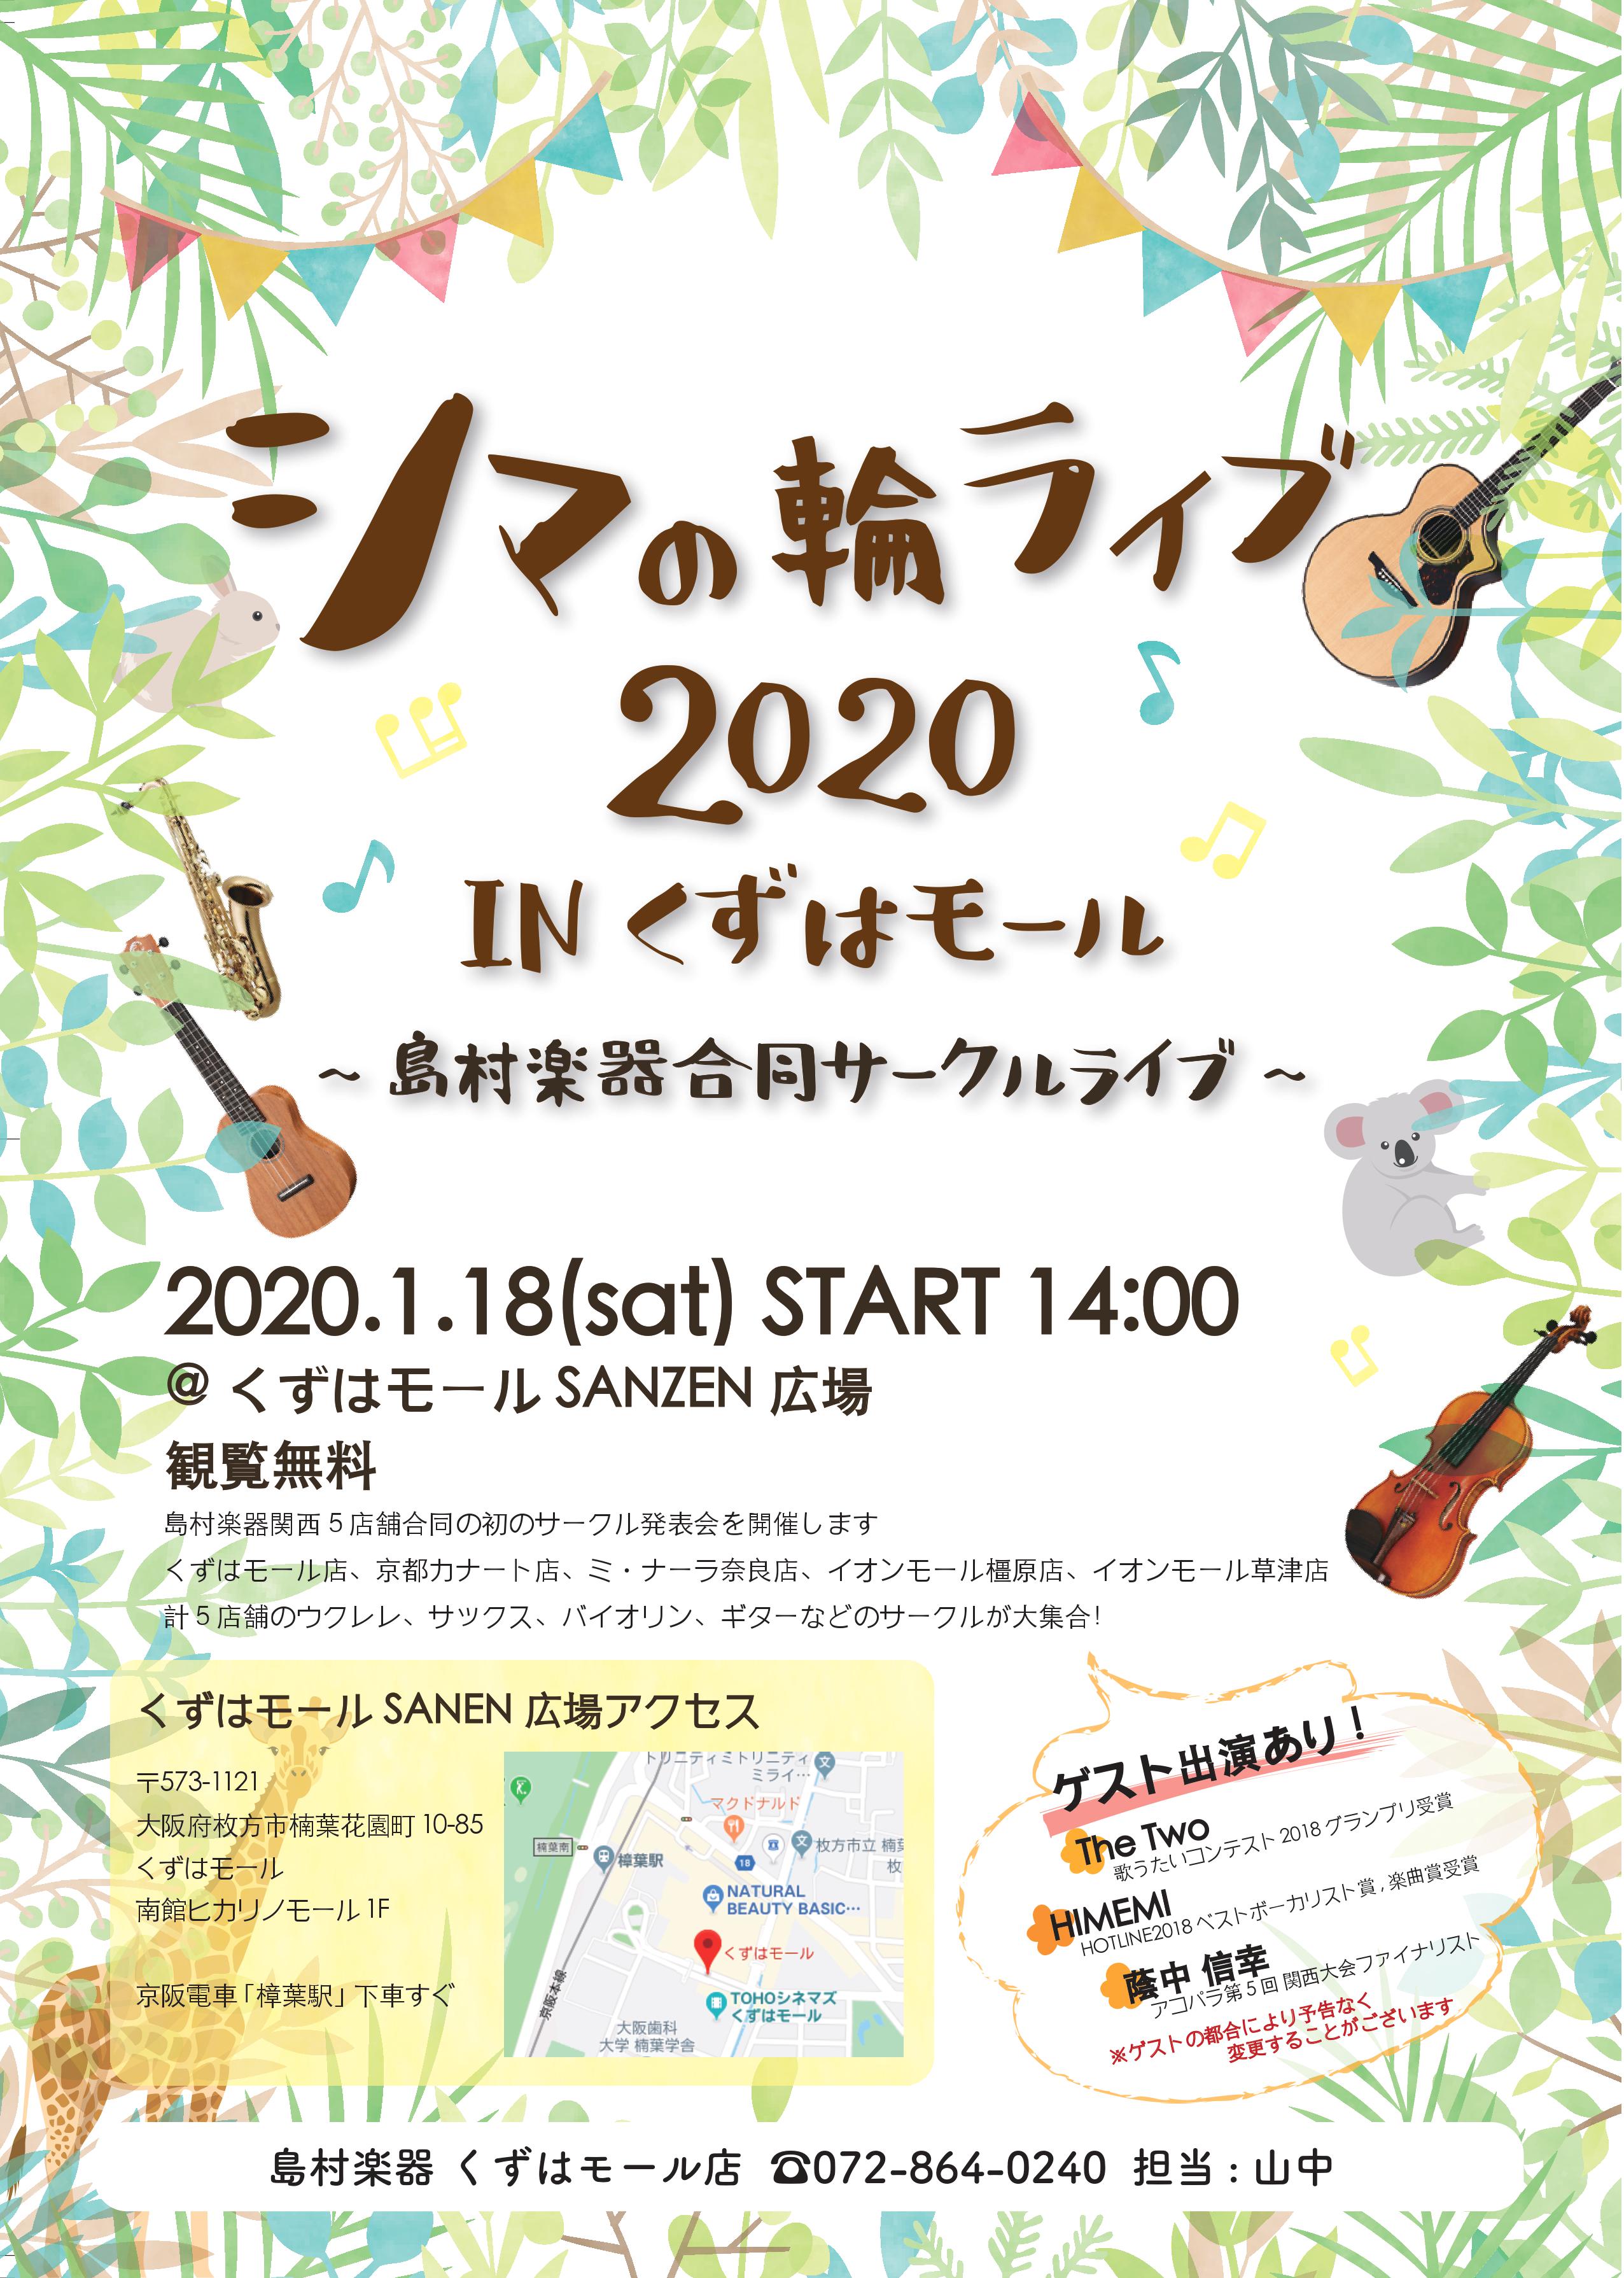 【イベント情報】シマの輪ライブ2020～島村楽器合同サークルライブ～